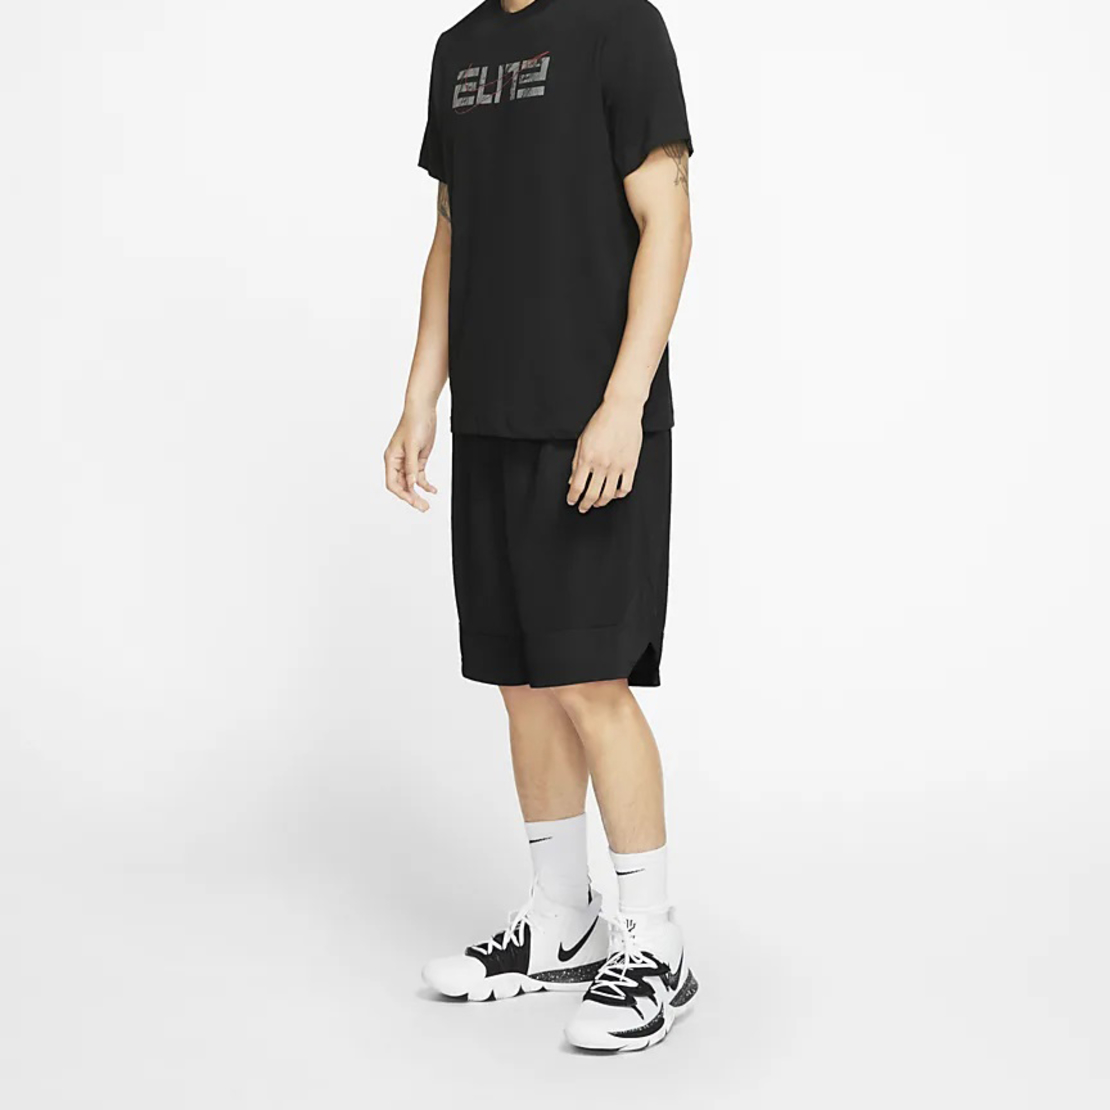 שורט כדורסל נייק גברים | Nike Dri-FIT Icon Basketball Shorts